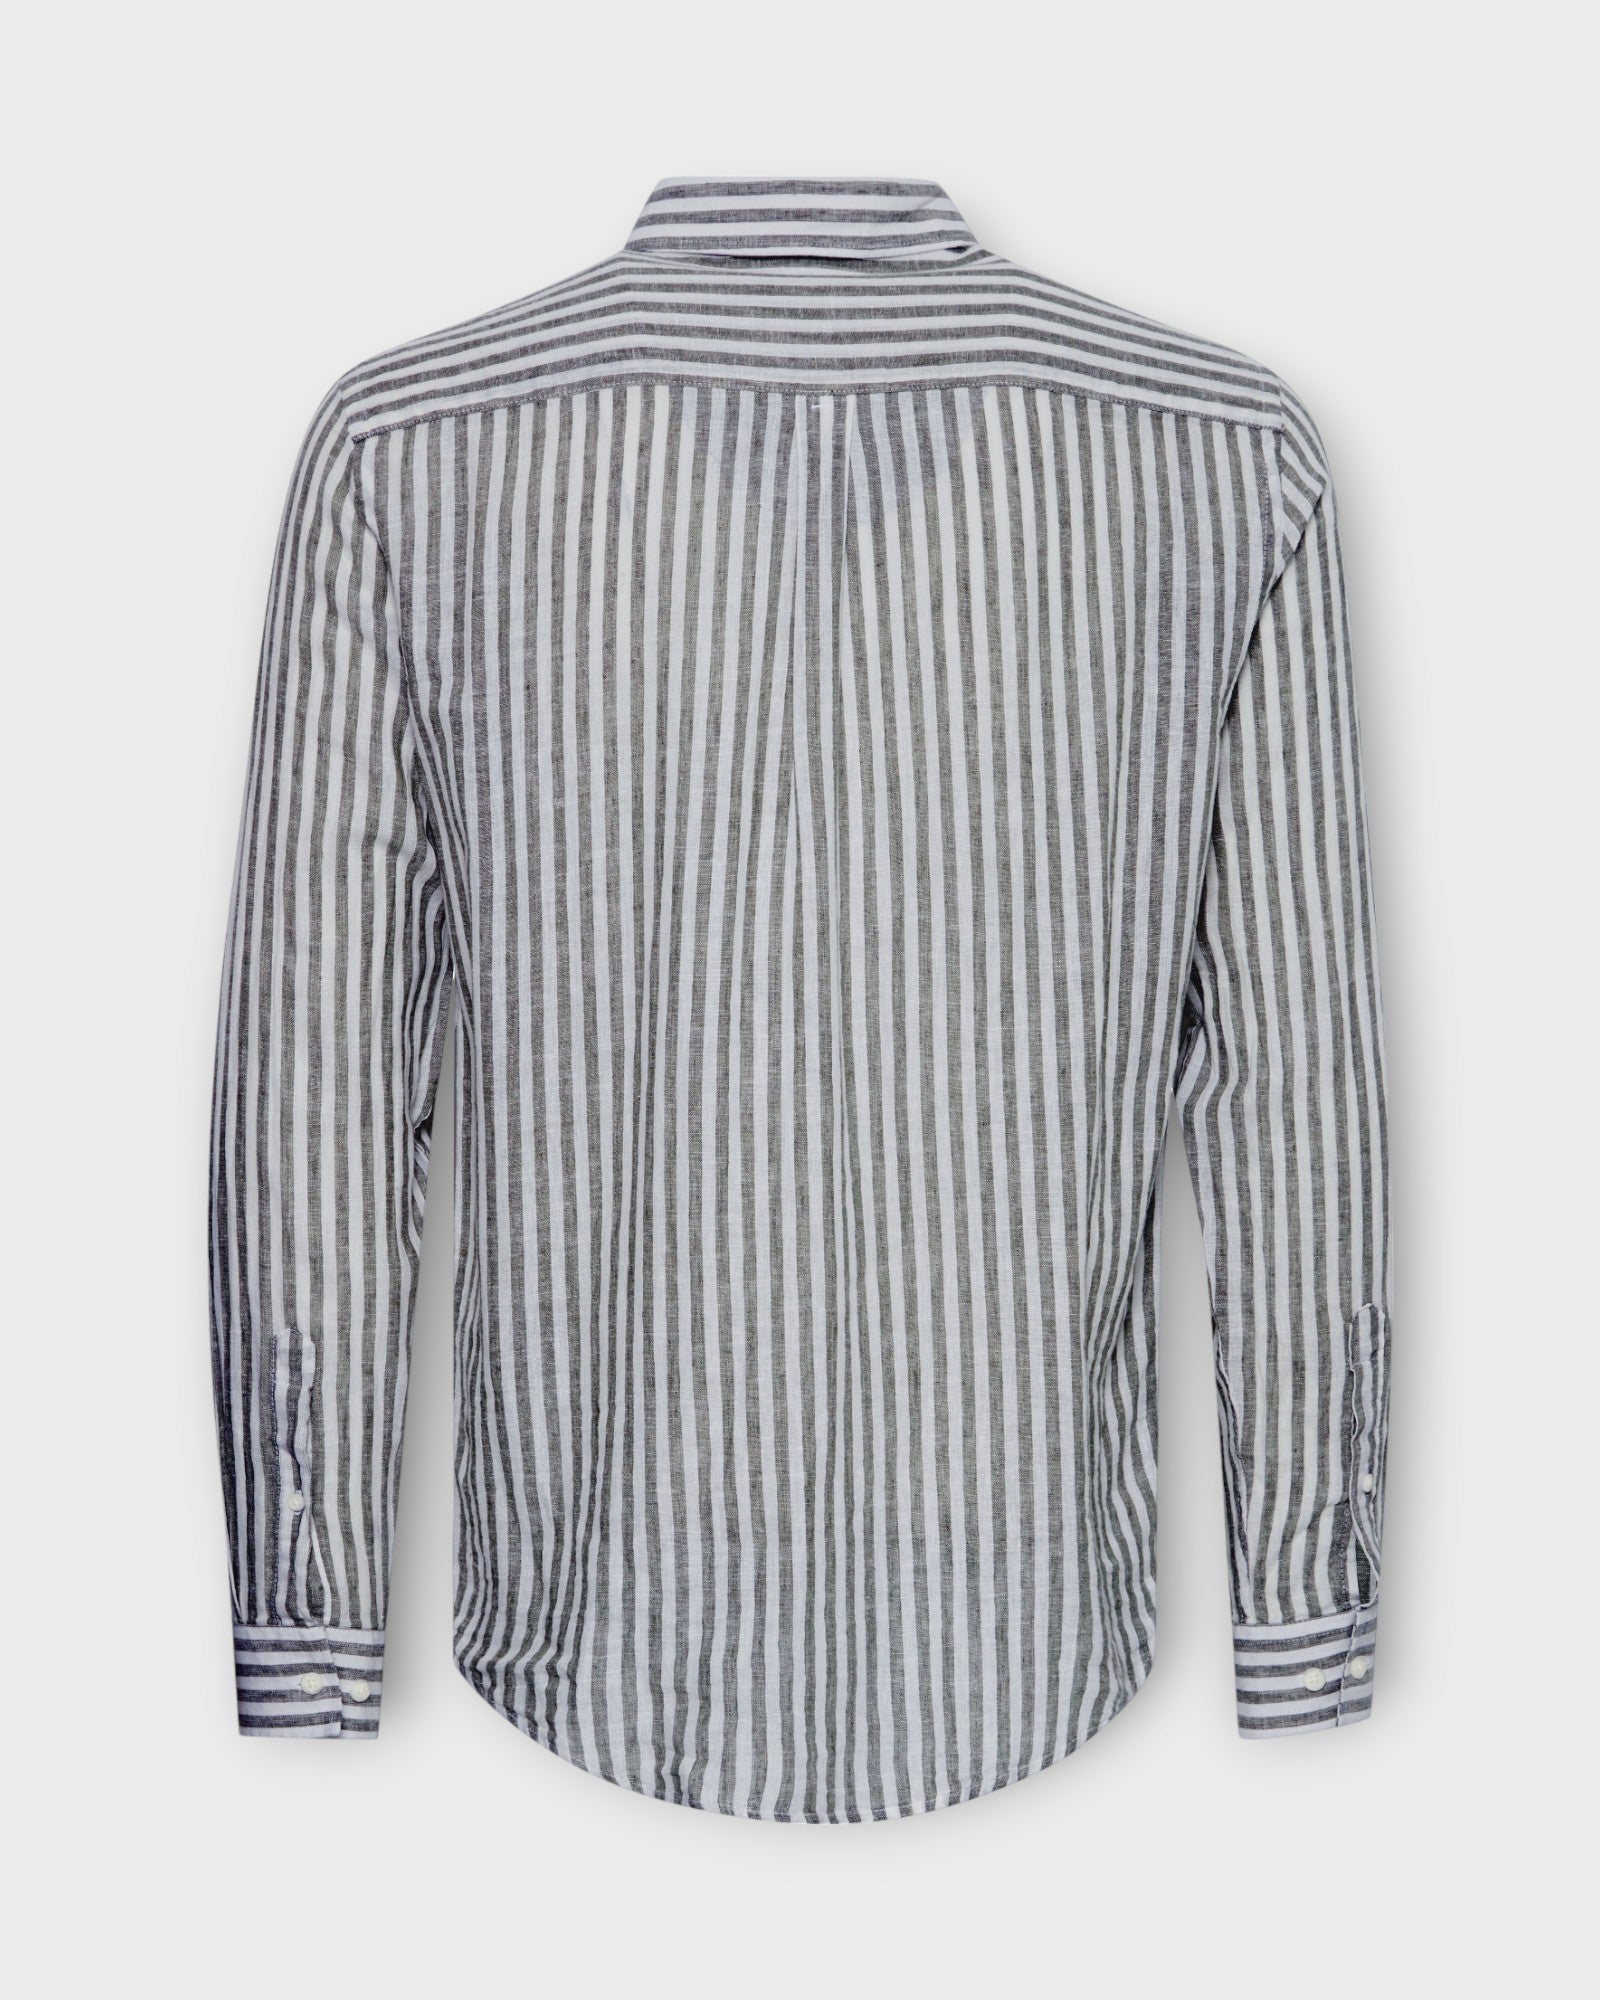 Anton Striped Linen Mix Shirt Dark Navy fra Casual Friday. Blå og hvid stribet langærmet hørskjorte til mænd. Her set bagfra.